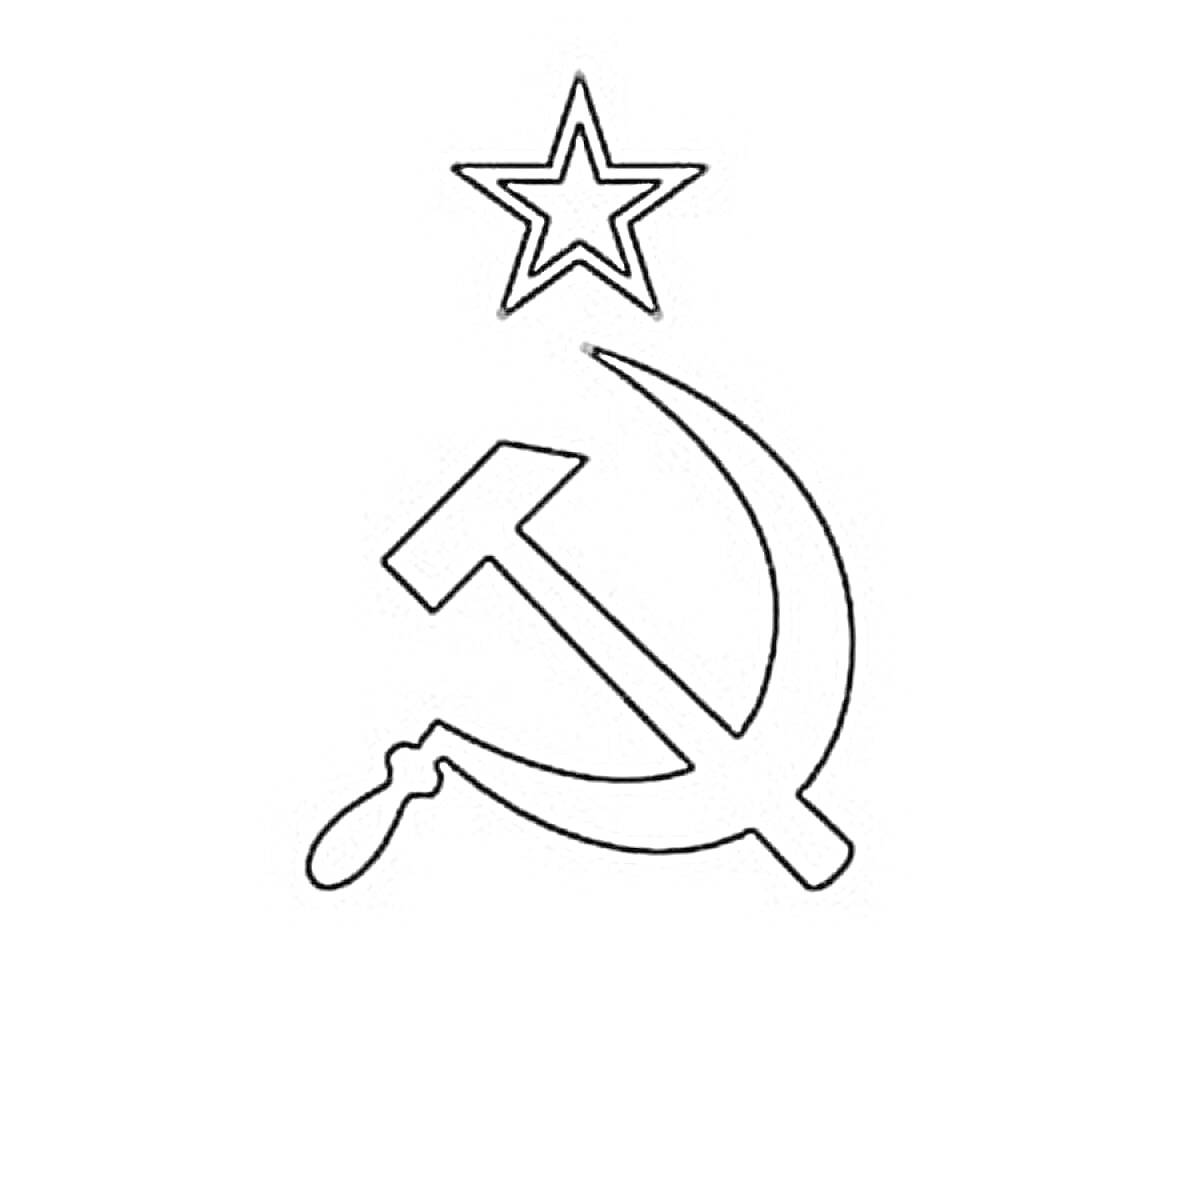 флаг СССР с серпом, молотом и звездой